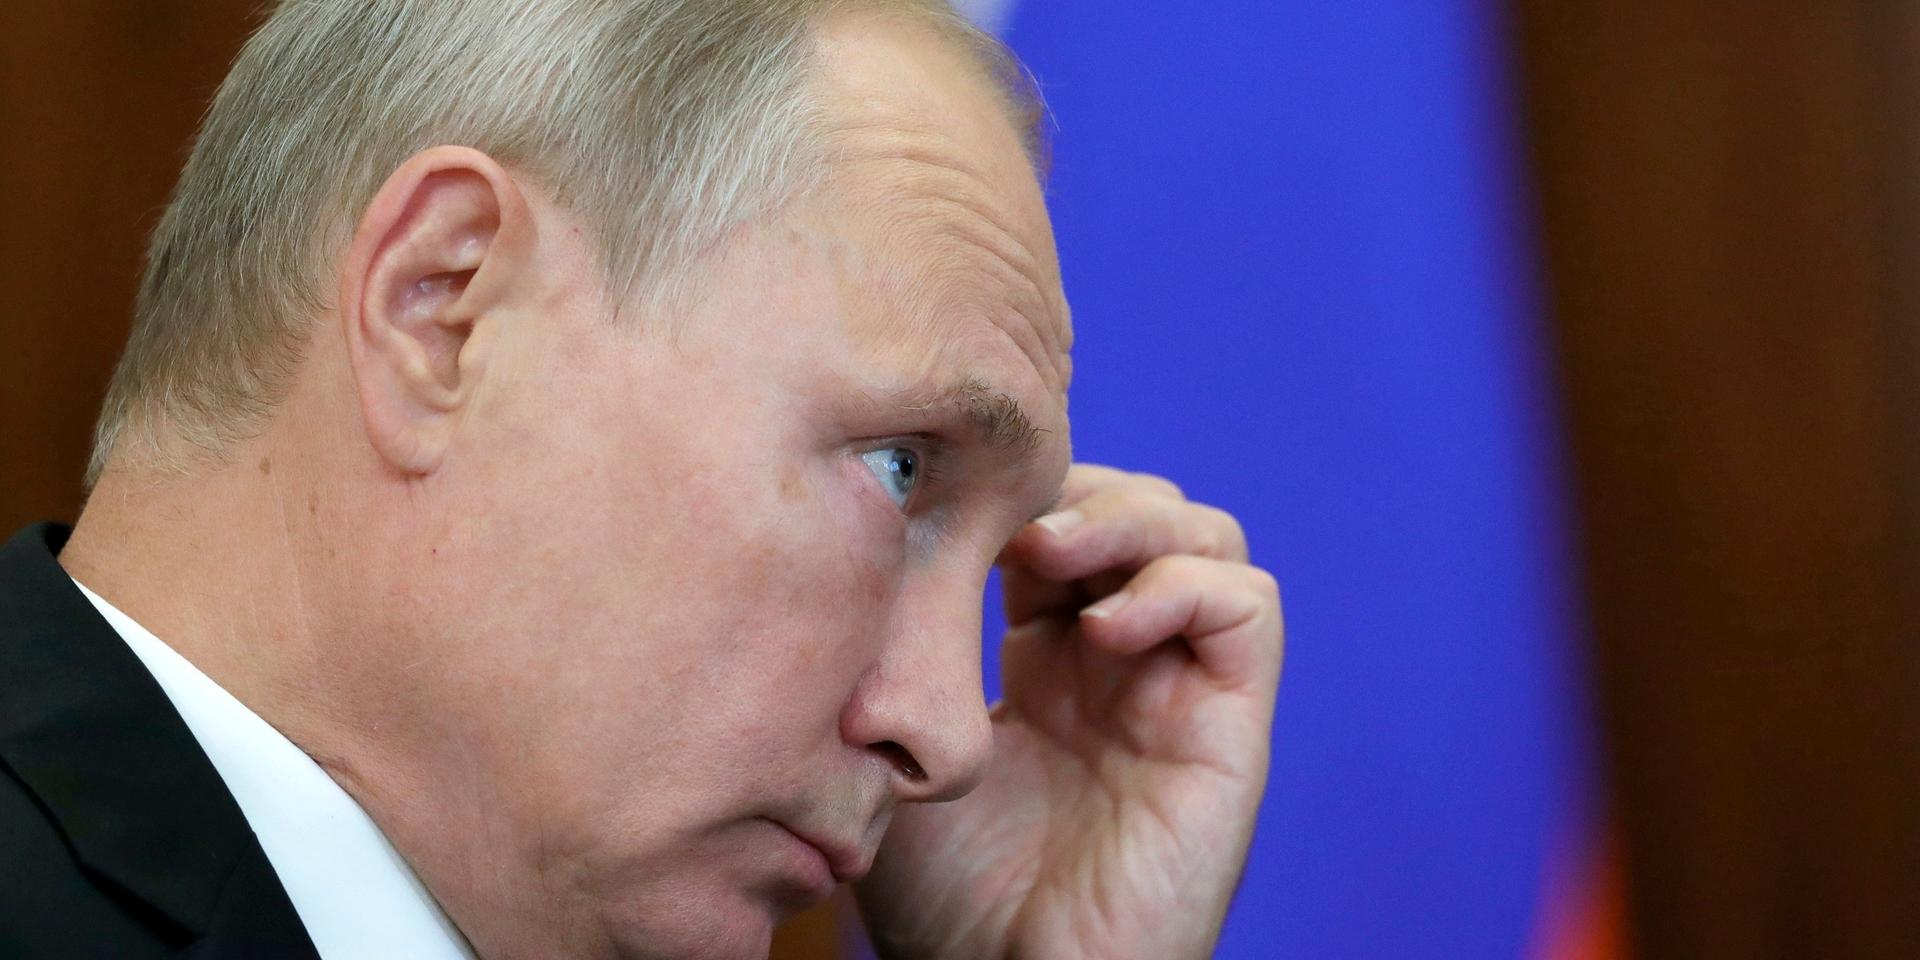 Den ryska rubelns ovanliga styrka utgör en huvudvärk för Ryssland och president Vladimir Putin. Arkivbild